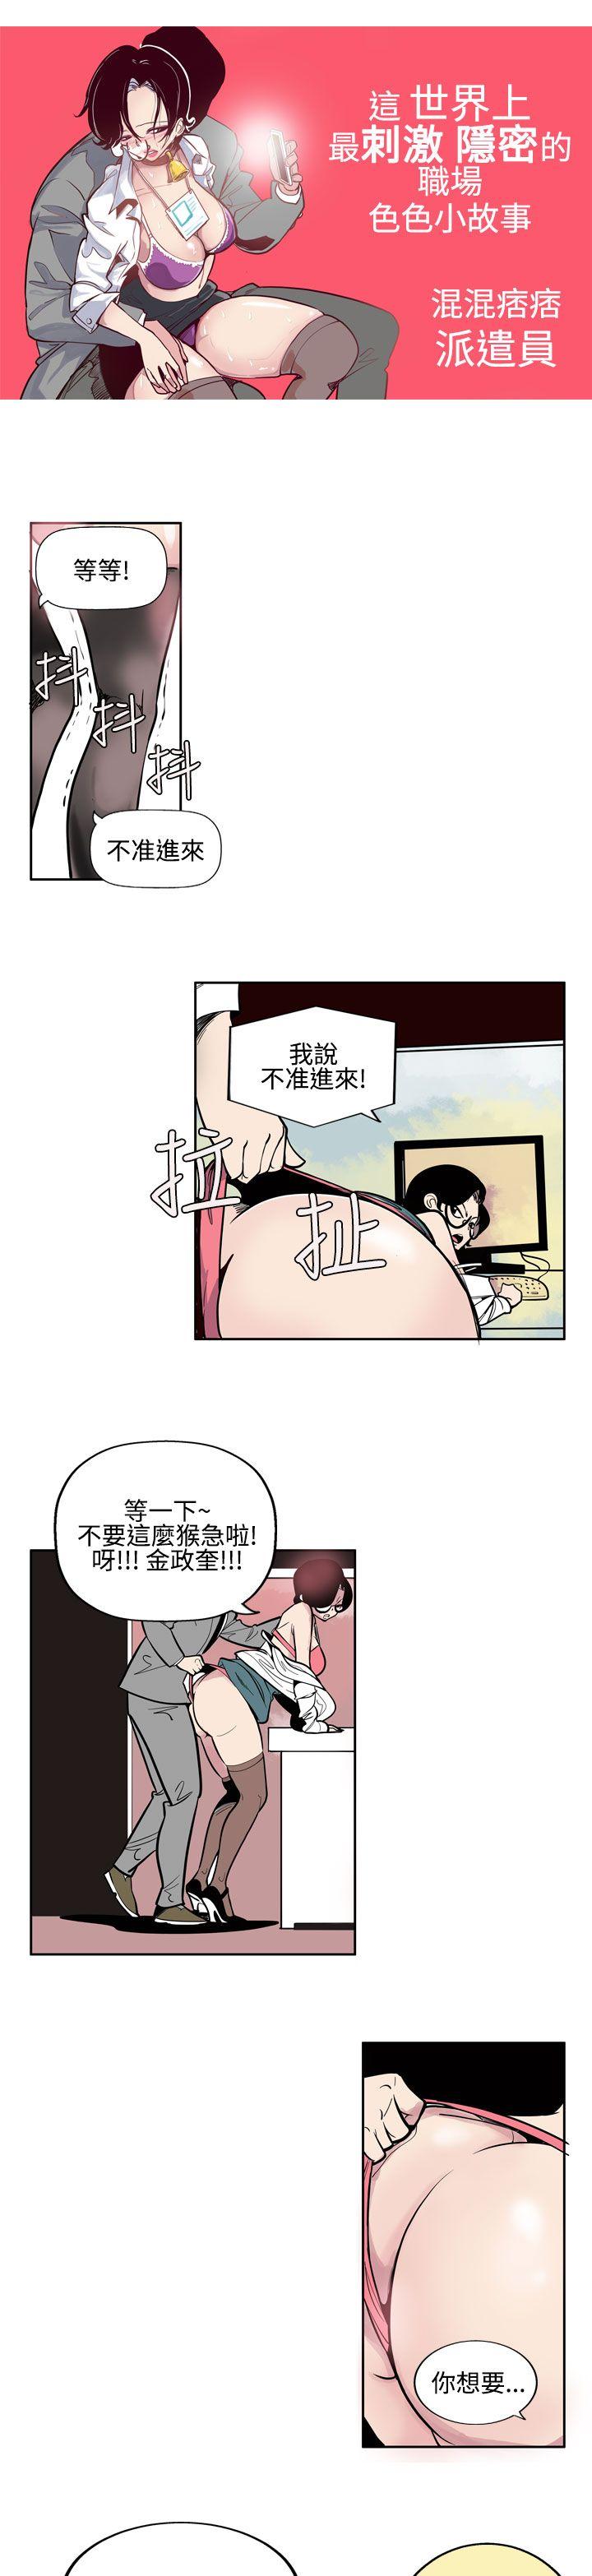 韩国污漫画 混混痞痞 派遣員 第2话 3